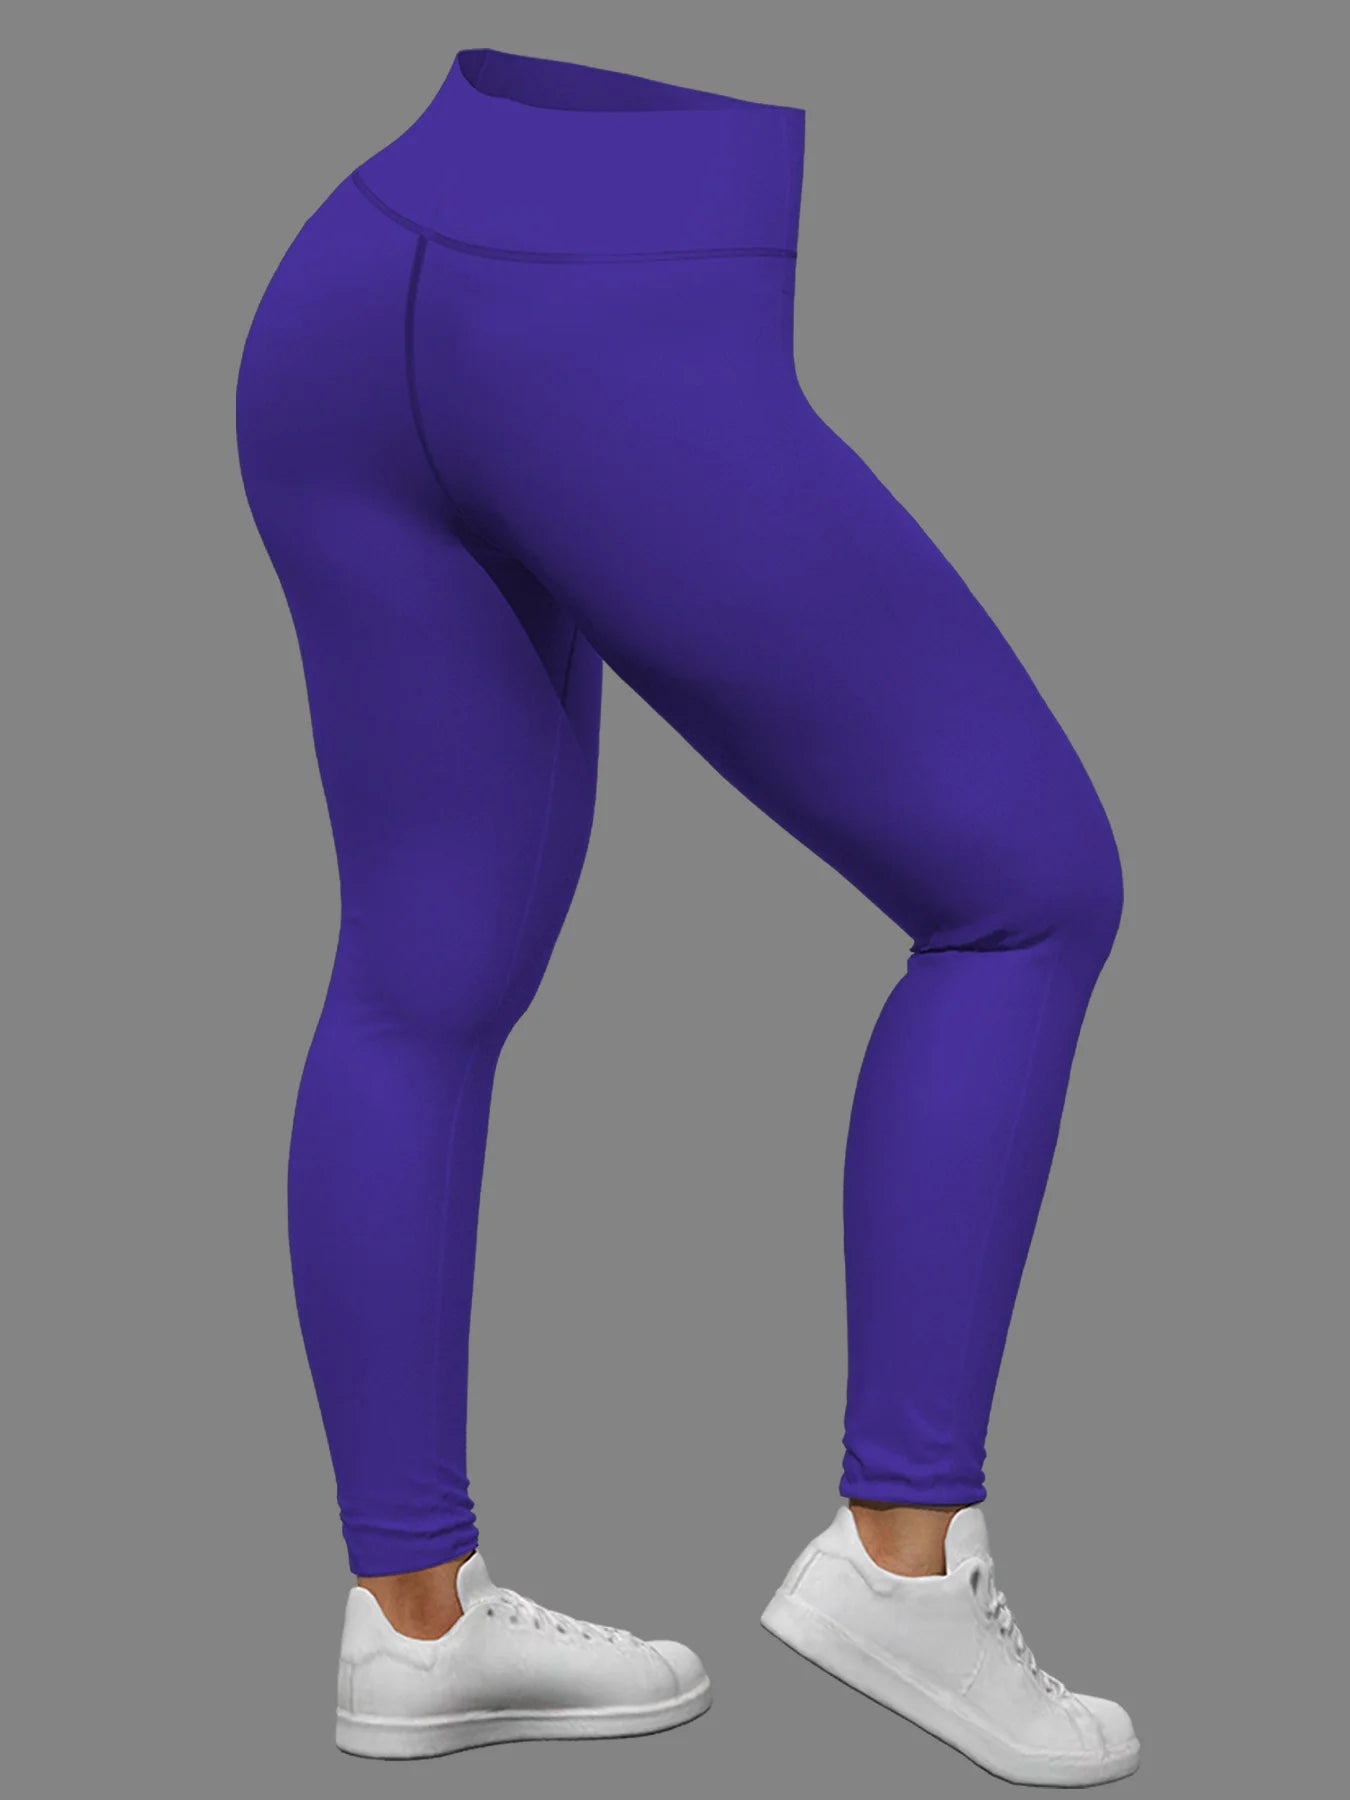 Plus Size Women's Temperament Slim Fit Purple Fashion Top Pants Two Piece Set Casual 2PCS Outfits Women's Clothing 2024